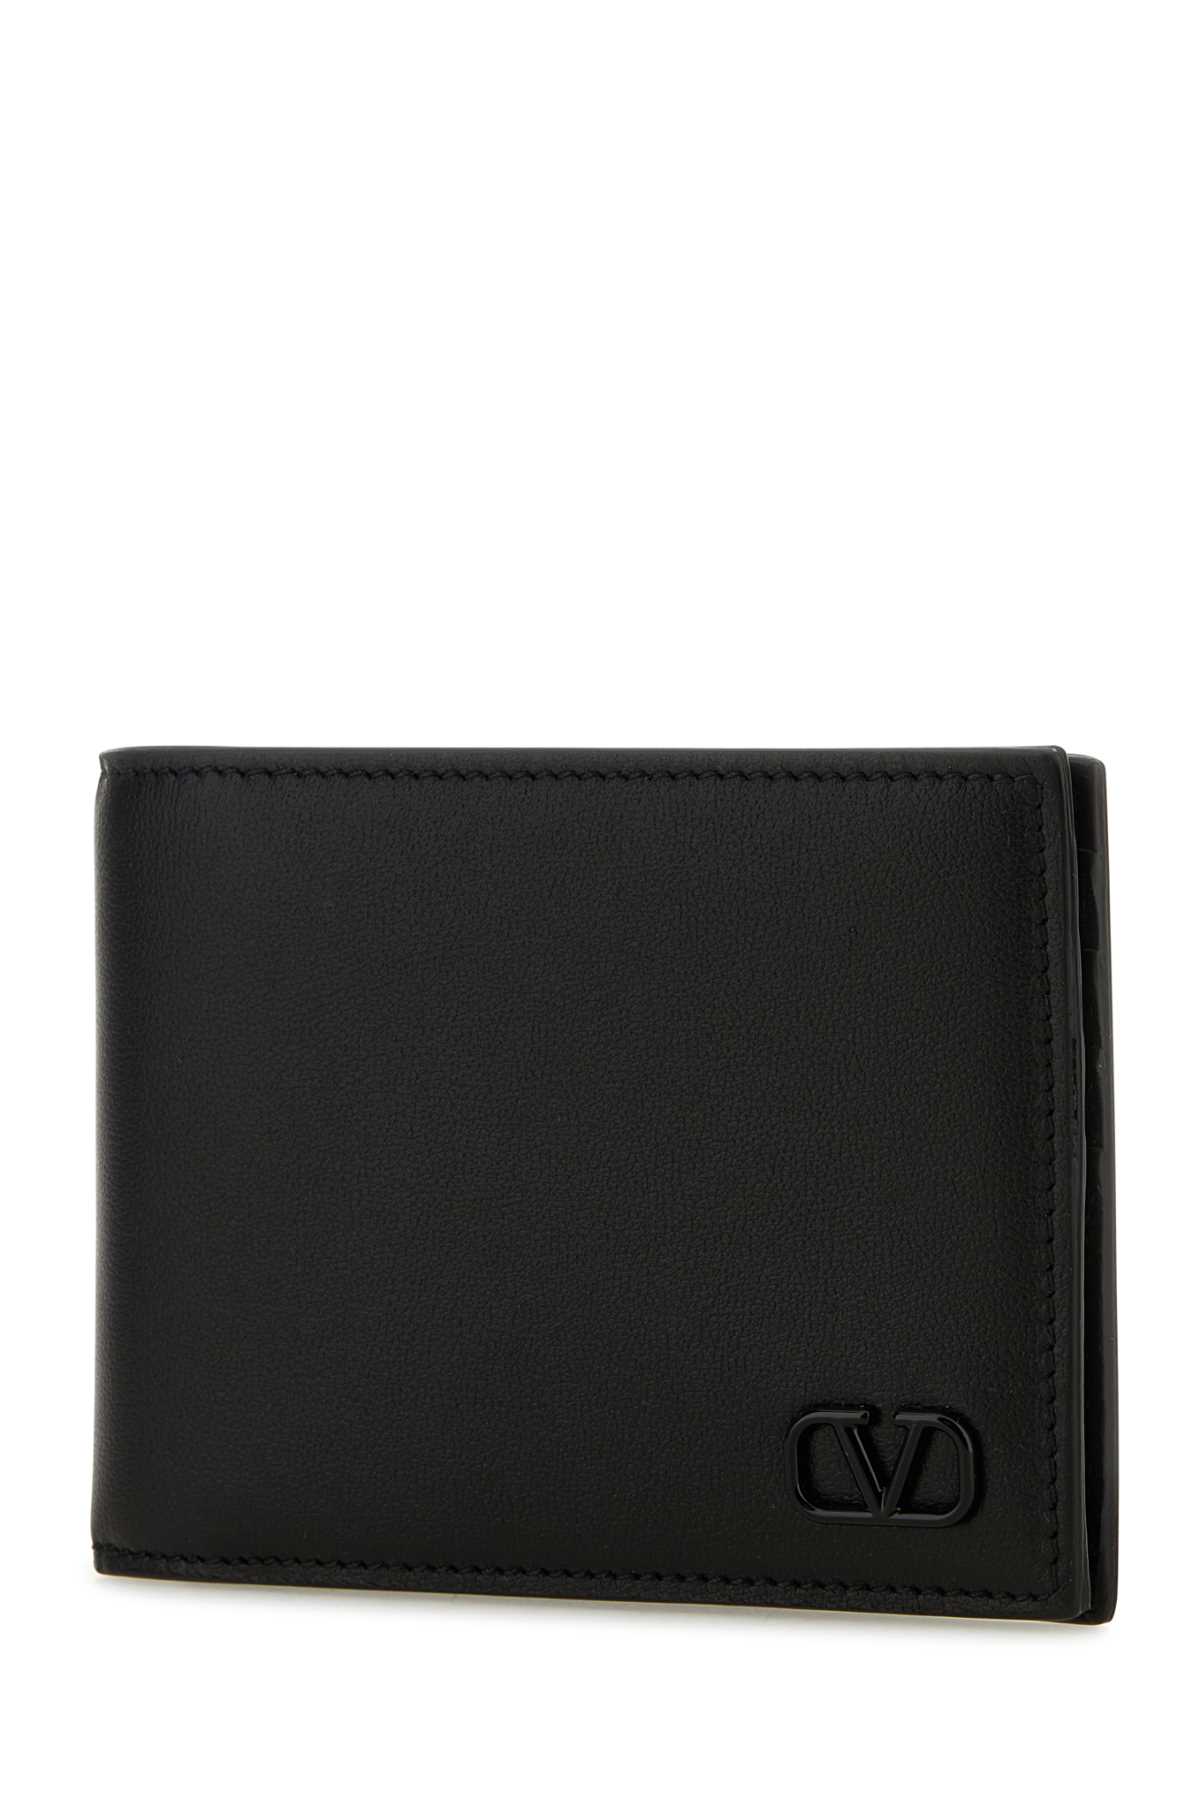 Valentino Garavani Black Leather Vlogo Wallet In Nero